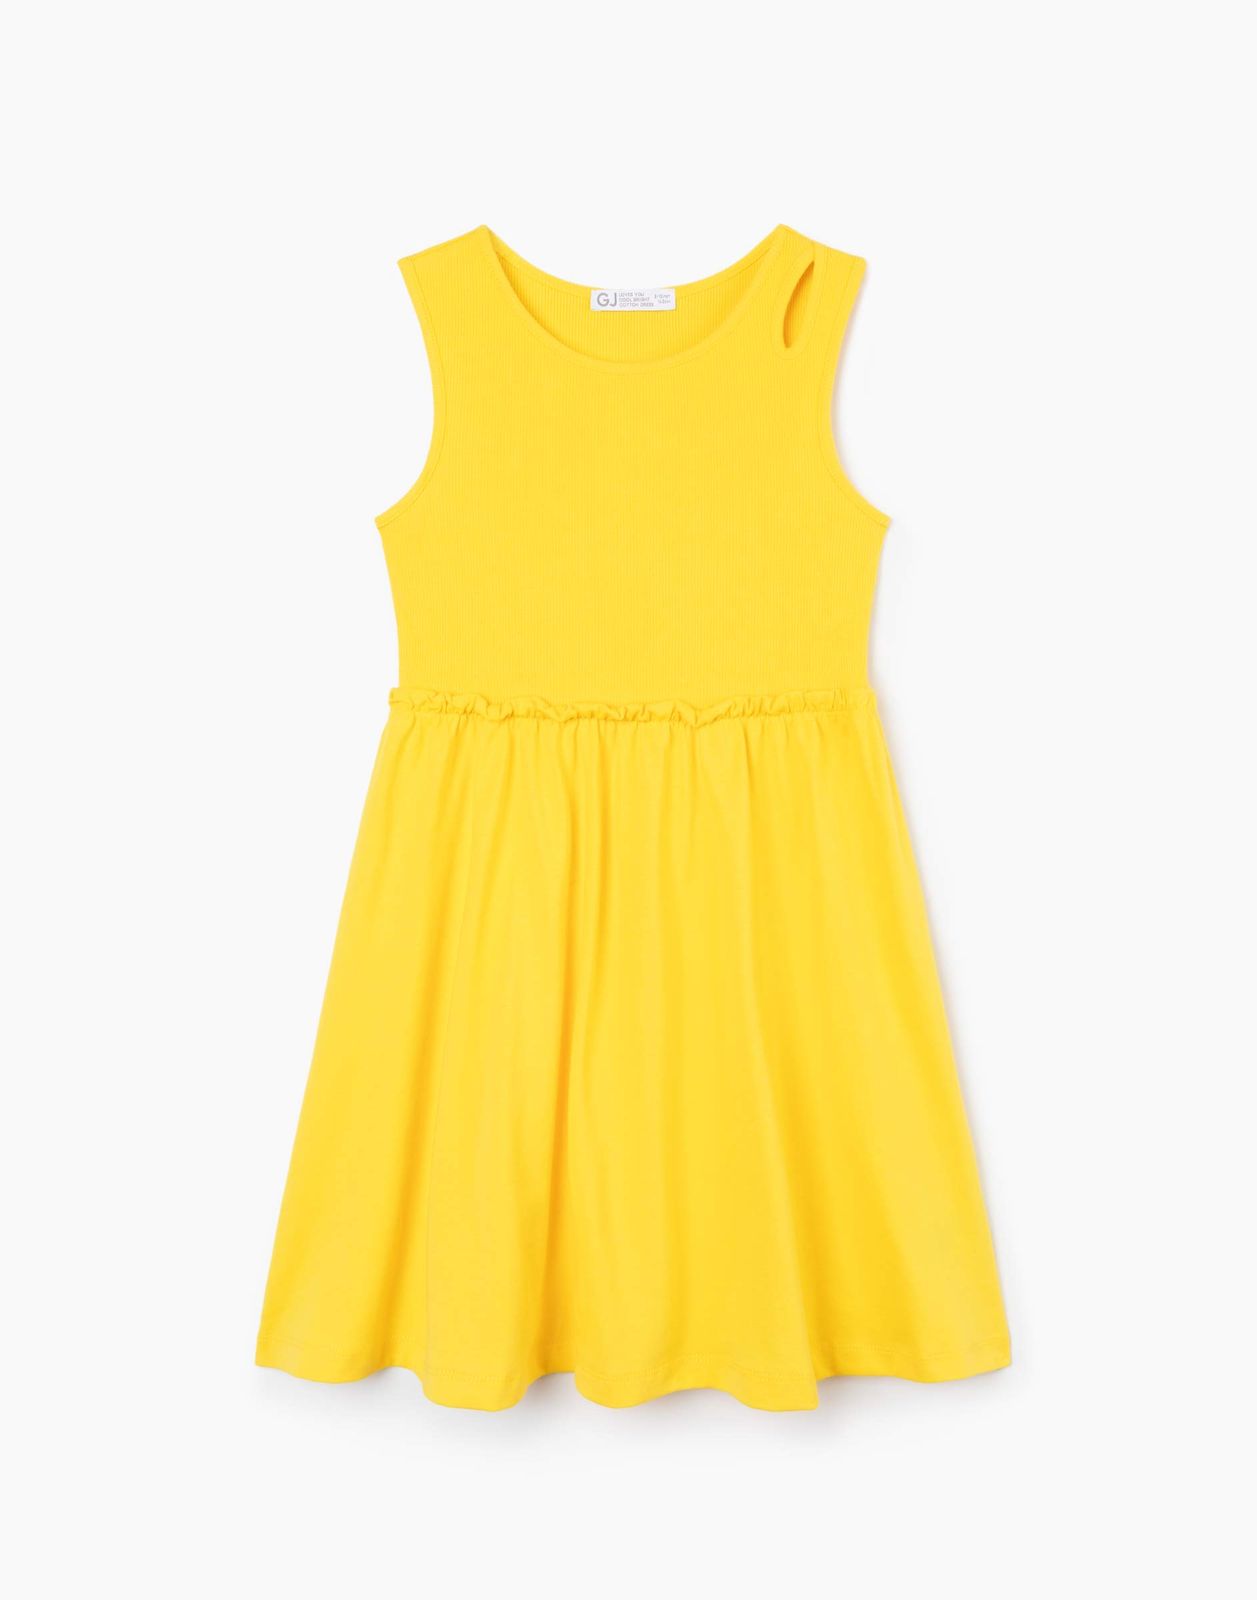 Платье для девочки Gloria Jeans GDR028570 желтый 2-4г/104